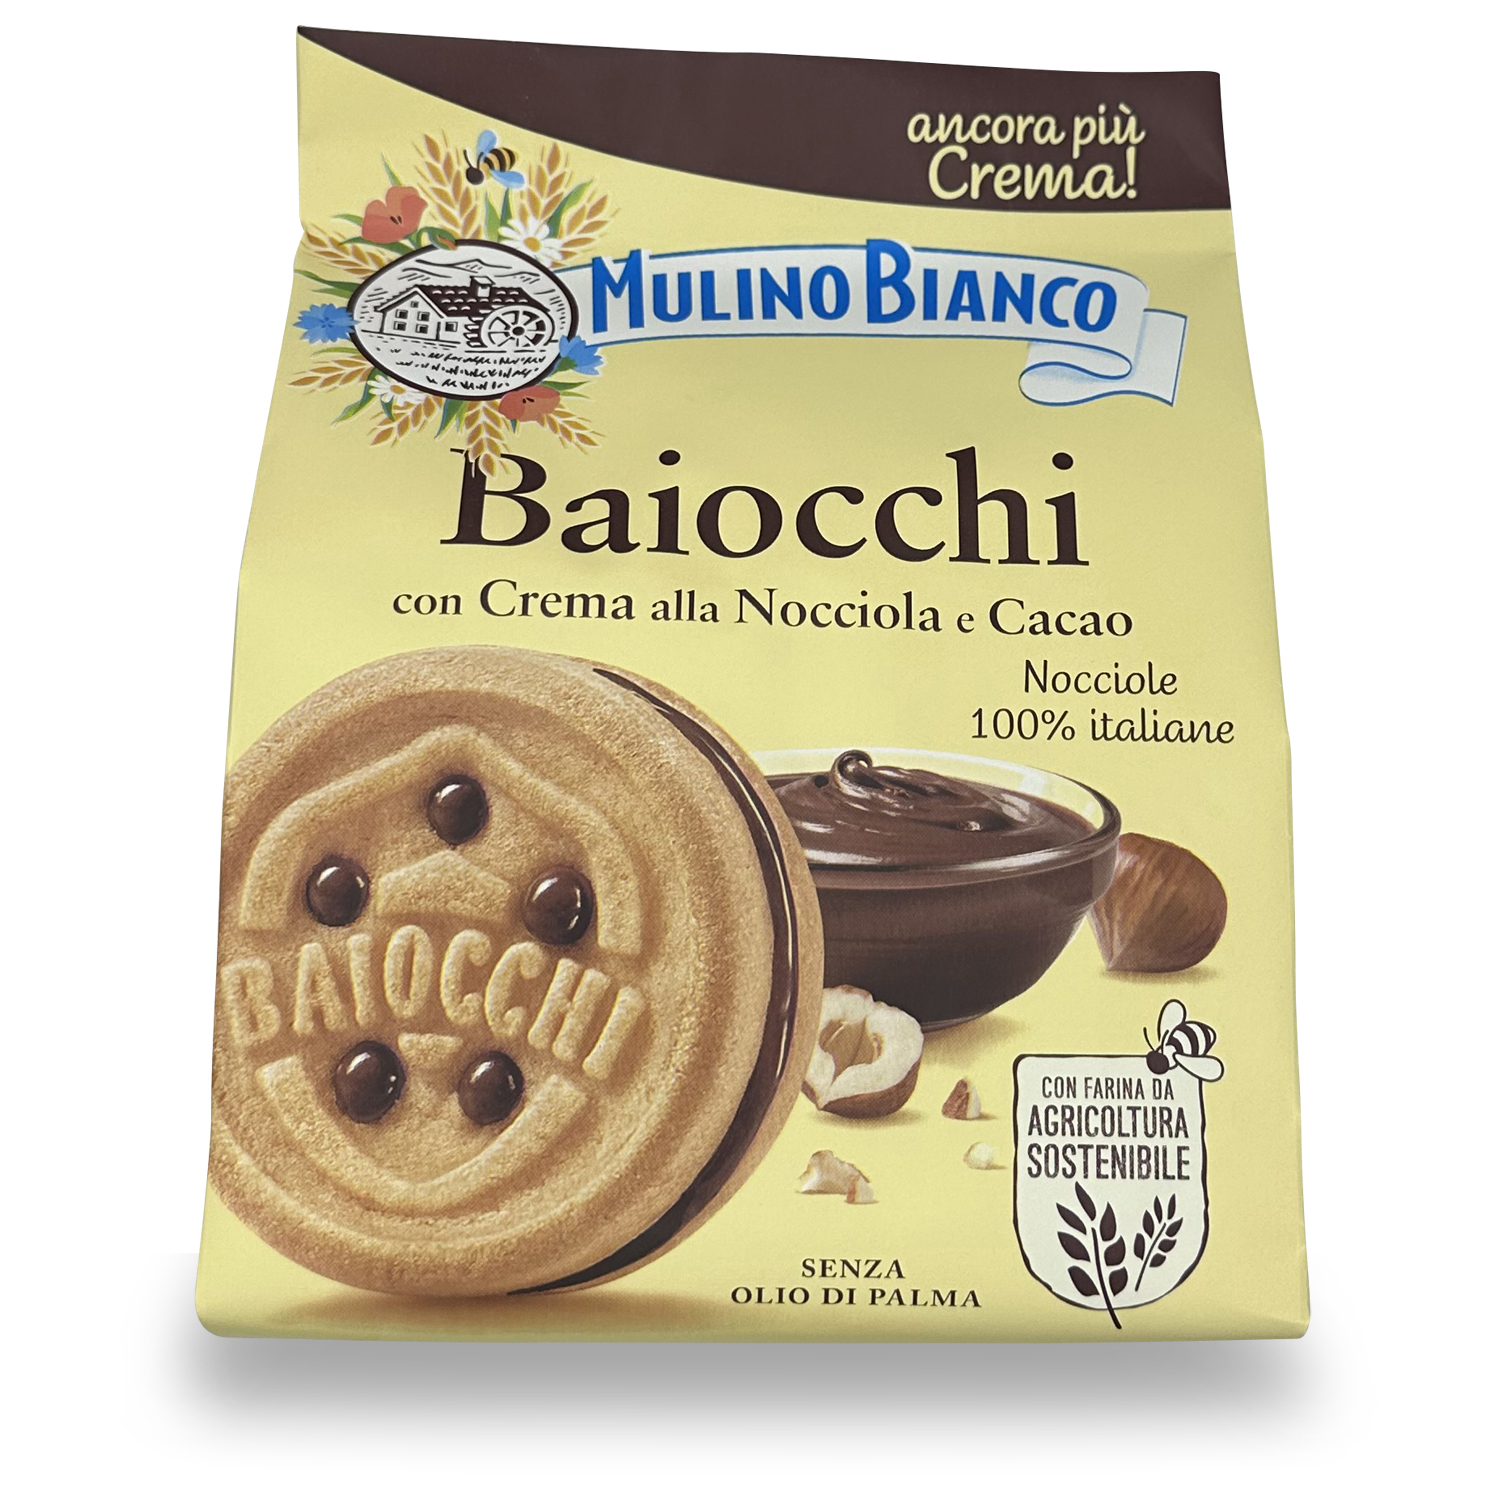 Product “Mulino Bianco - Baiocchi con crema alla nocciola e cacao